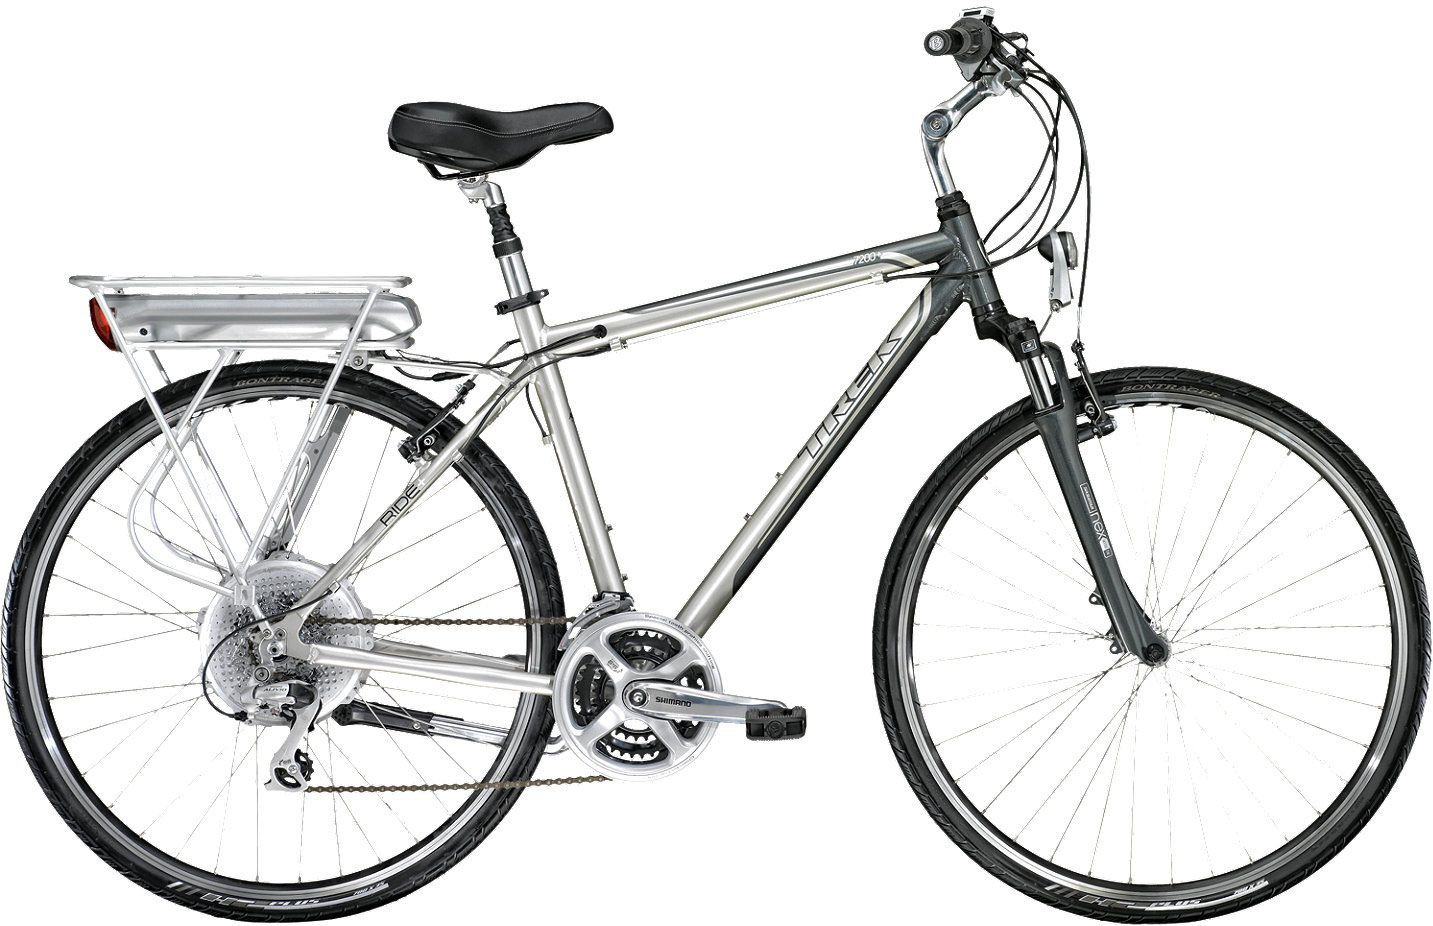 2011 Trek 7200+ - Bicycle Details 